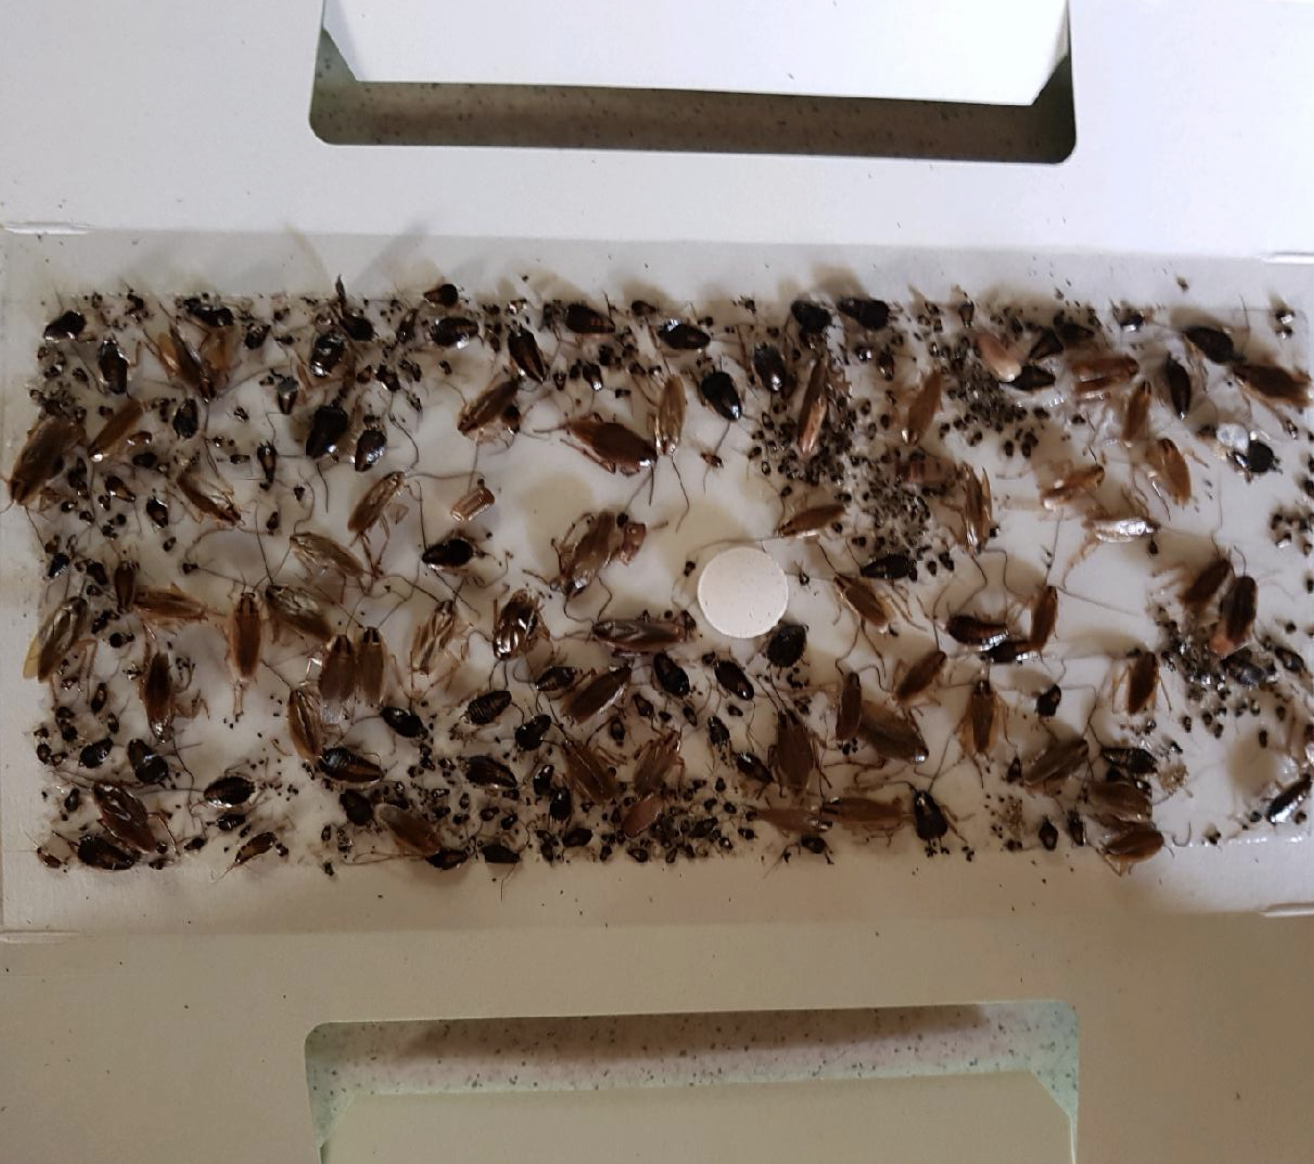 Cockroach infestation in Maroubra